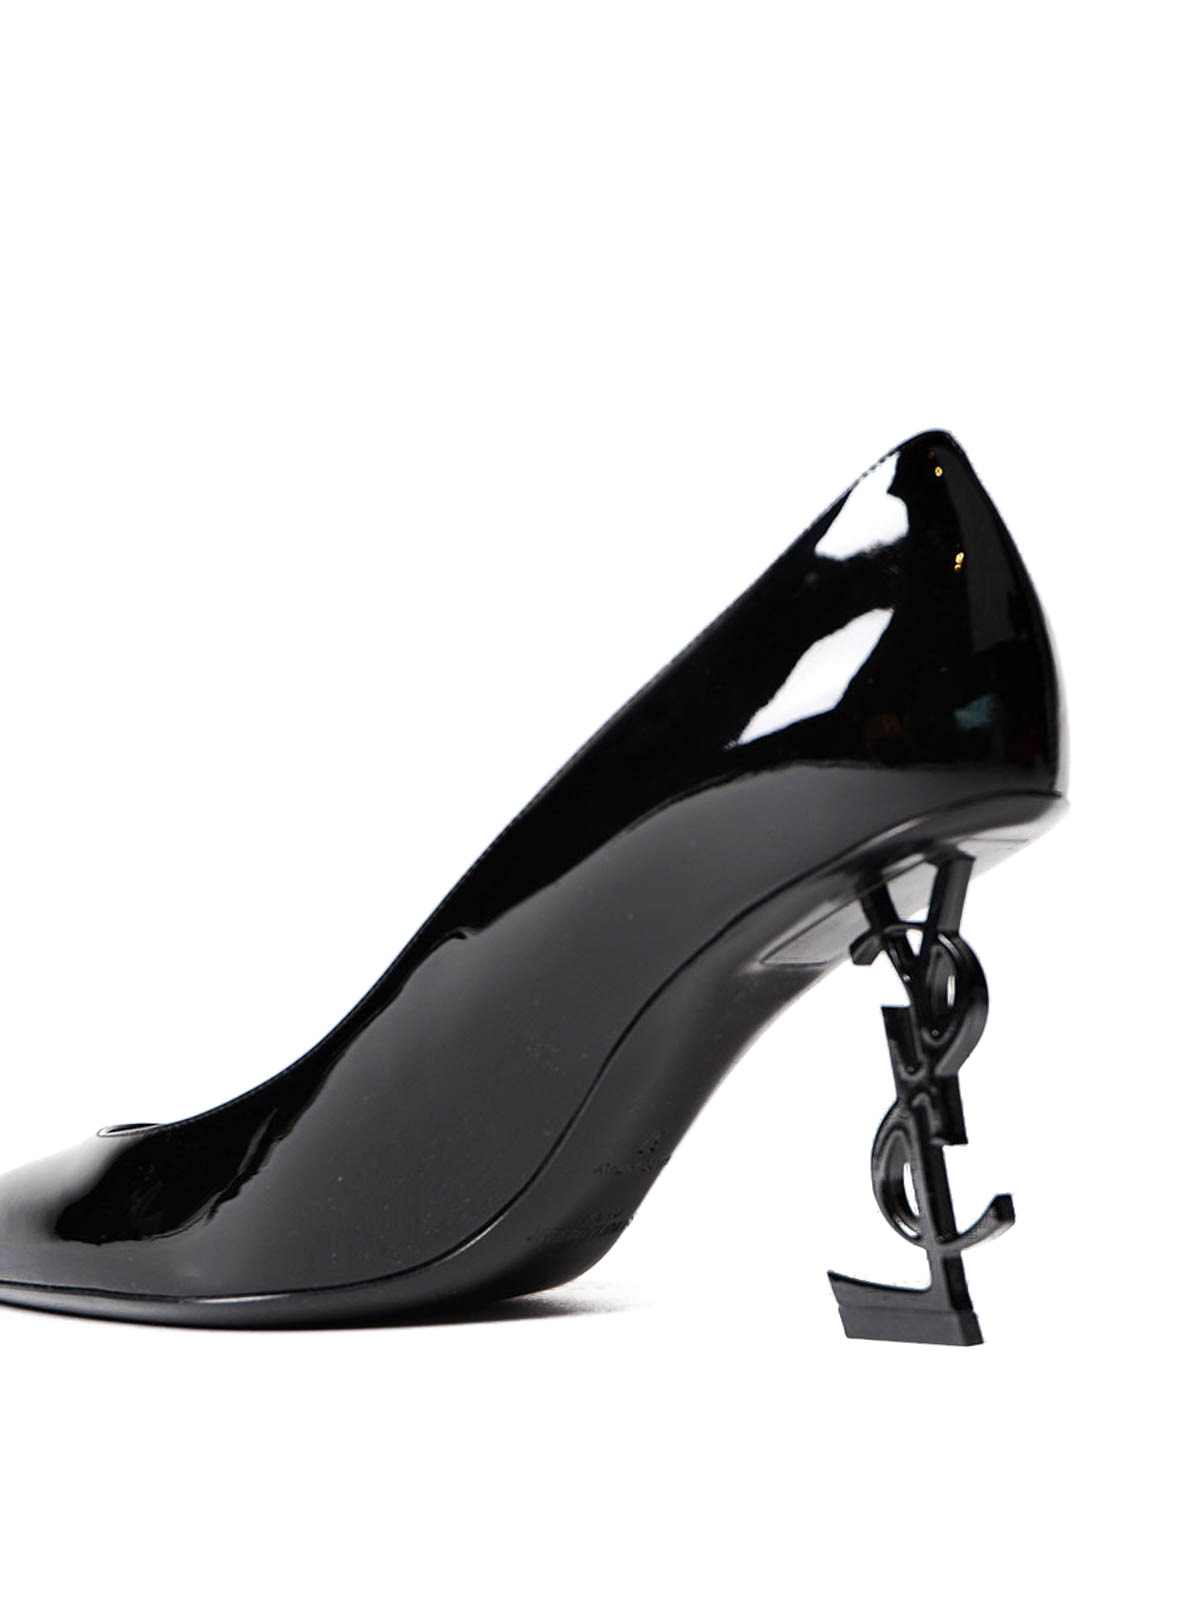 Court shoes Saint Laurent - Opyum YSL heeled patent pumps - 484160D6CVV1000